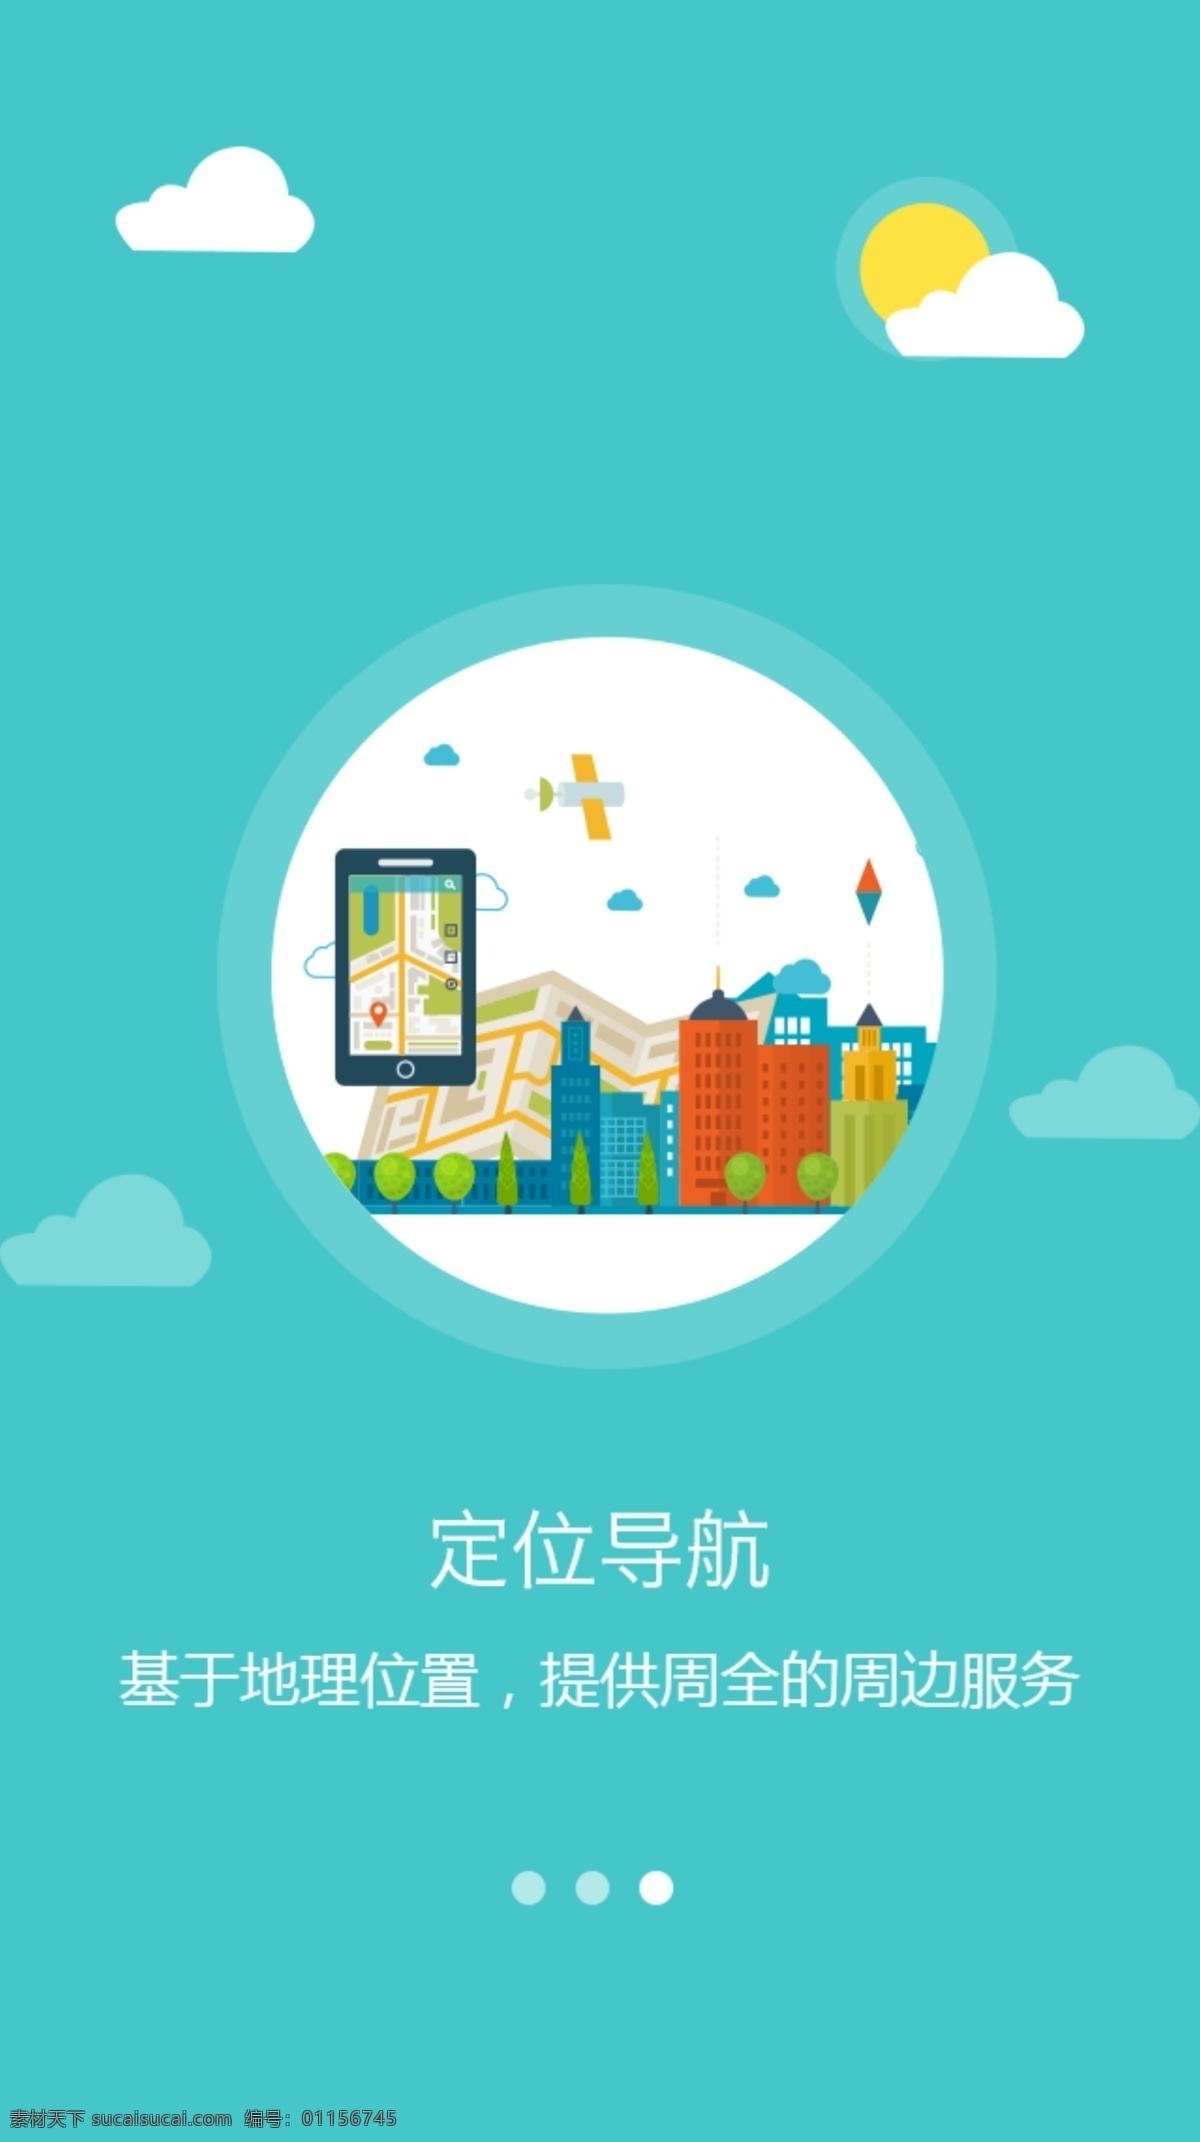 云游 app 启动 页 旅游 引导 橙色 红色 绿色引导页 引导页设计 app欢迎页 app引导页 psd下载